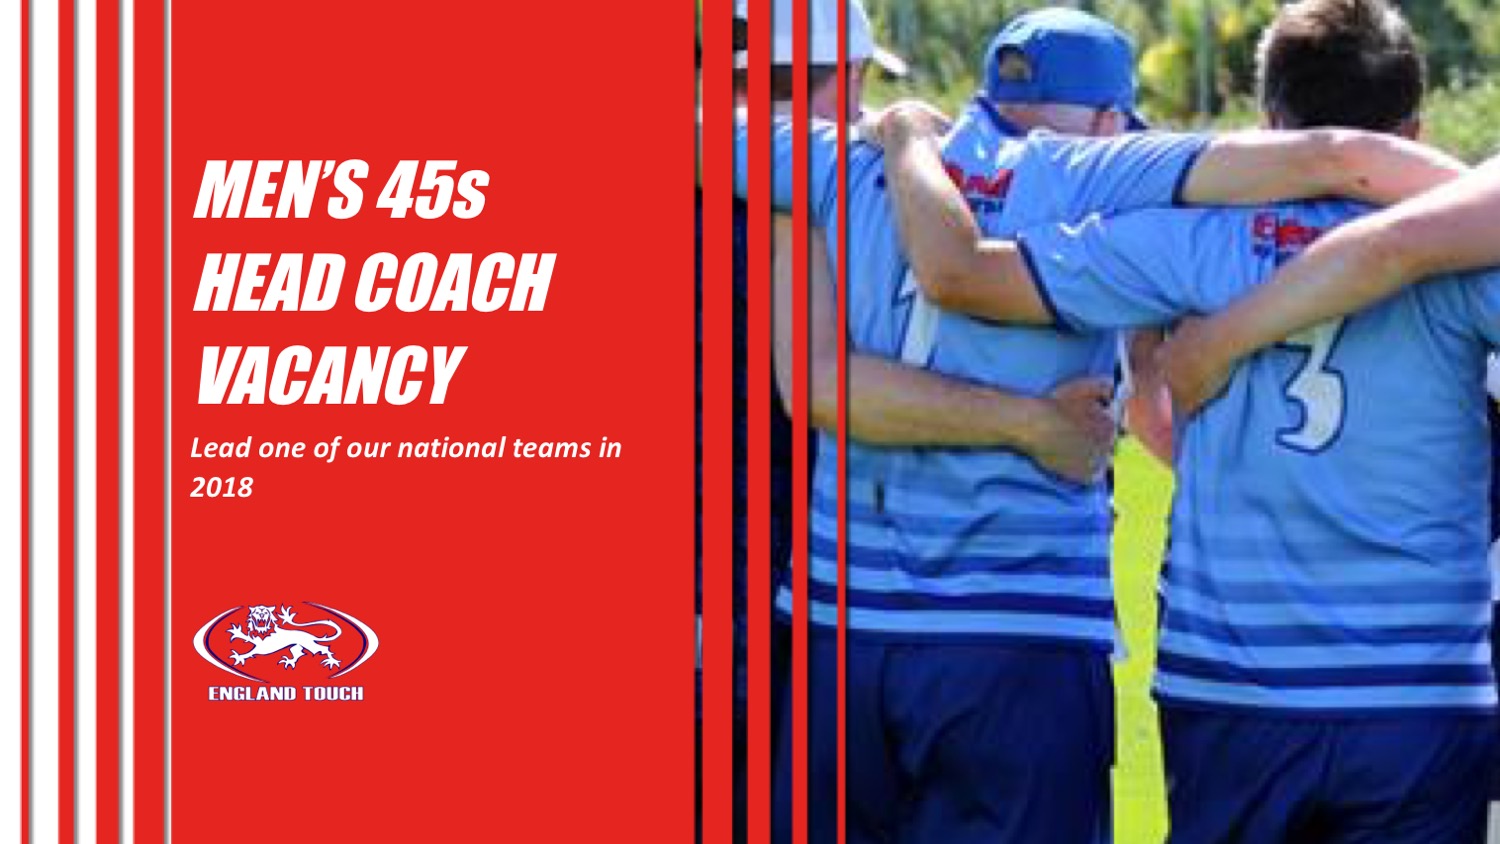 Men's 45s head coach vacancy